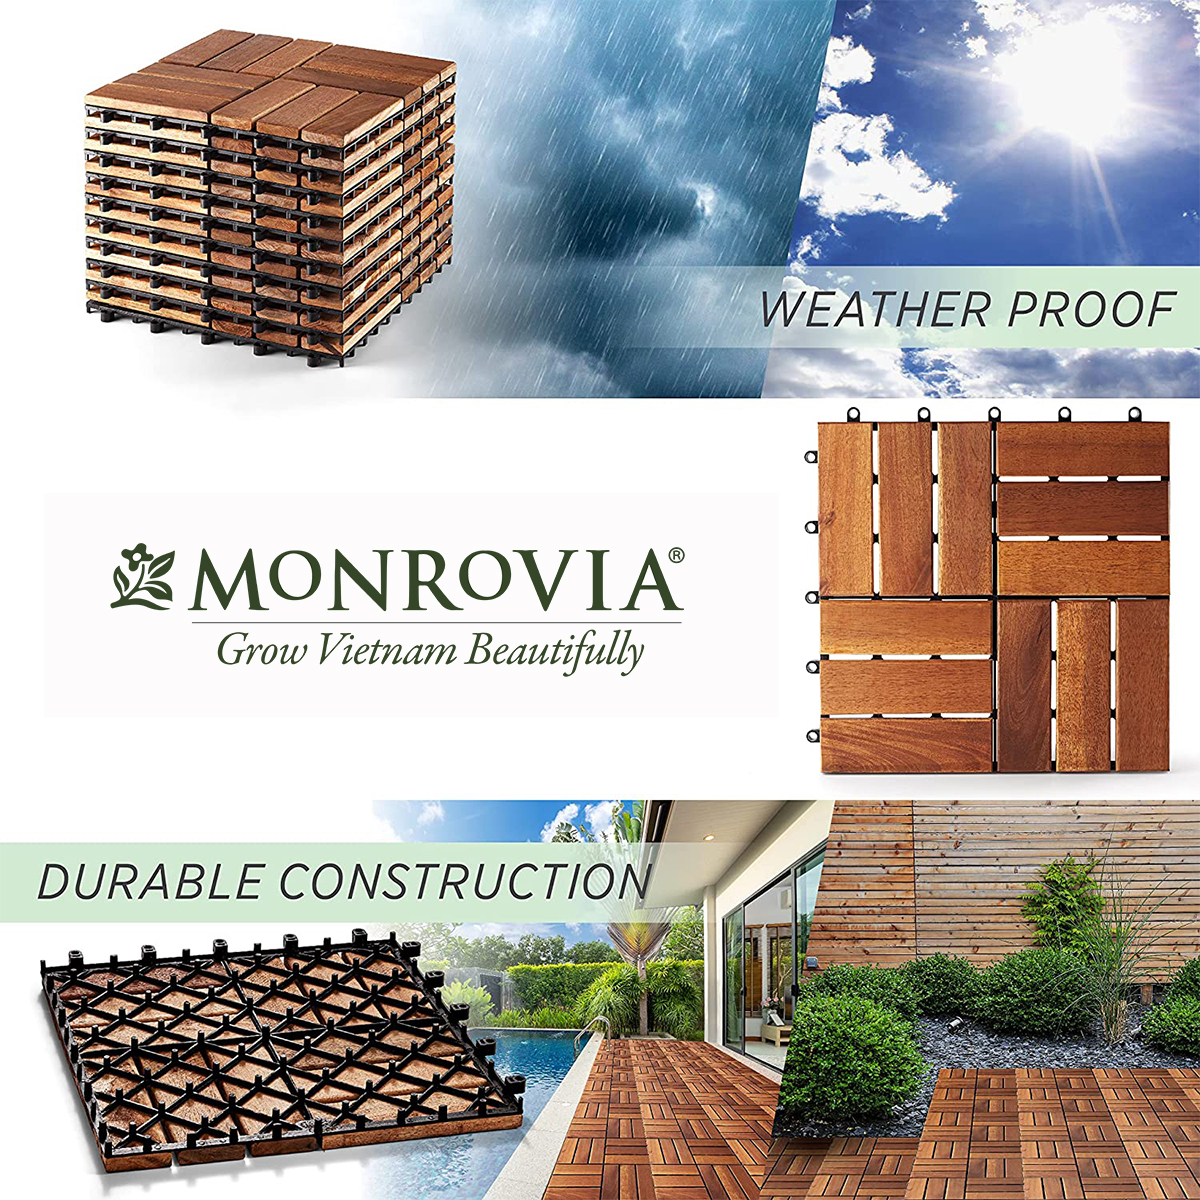 Ván gỗ lót sàn ban công thương hiệu MONROVIA, tiêu chuẩn Châu Âu, 9 Vỉ ốp gỗ lót sàn, vỉ nhựa gỗ lót ban công, ngoài trời, hành lang, sân vườn, hồ bơi, vỉ gỗ tự nhiên 12 nan hoặc 6 nan, siêu bền, chịu nước tốt